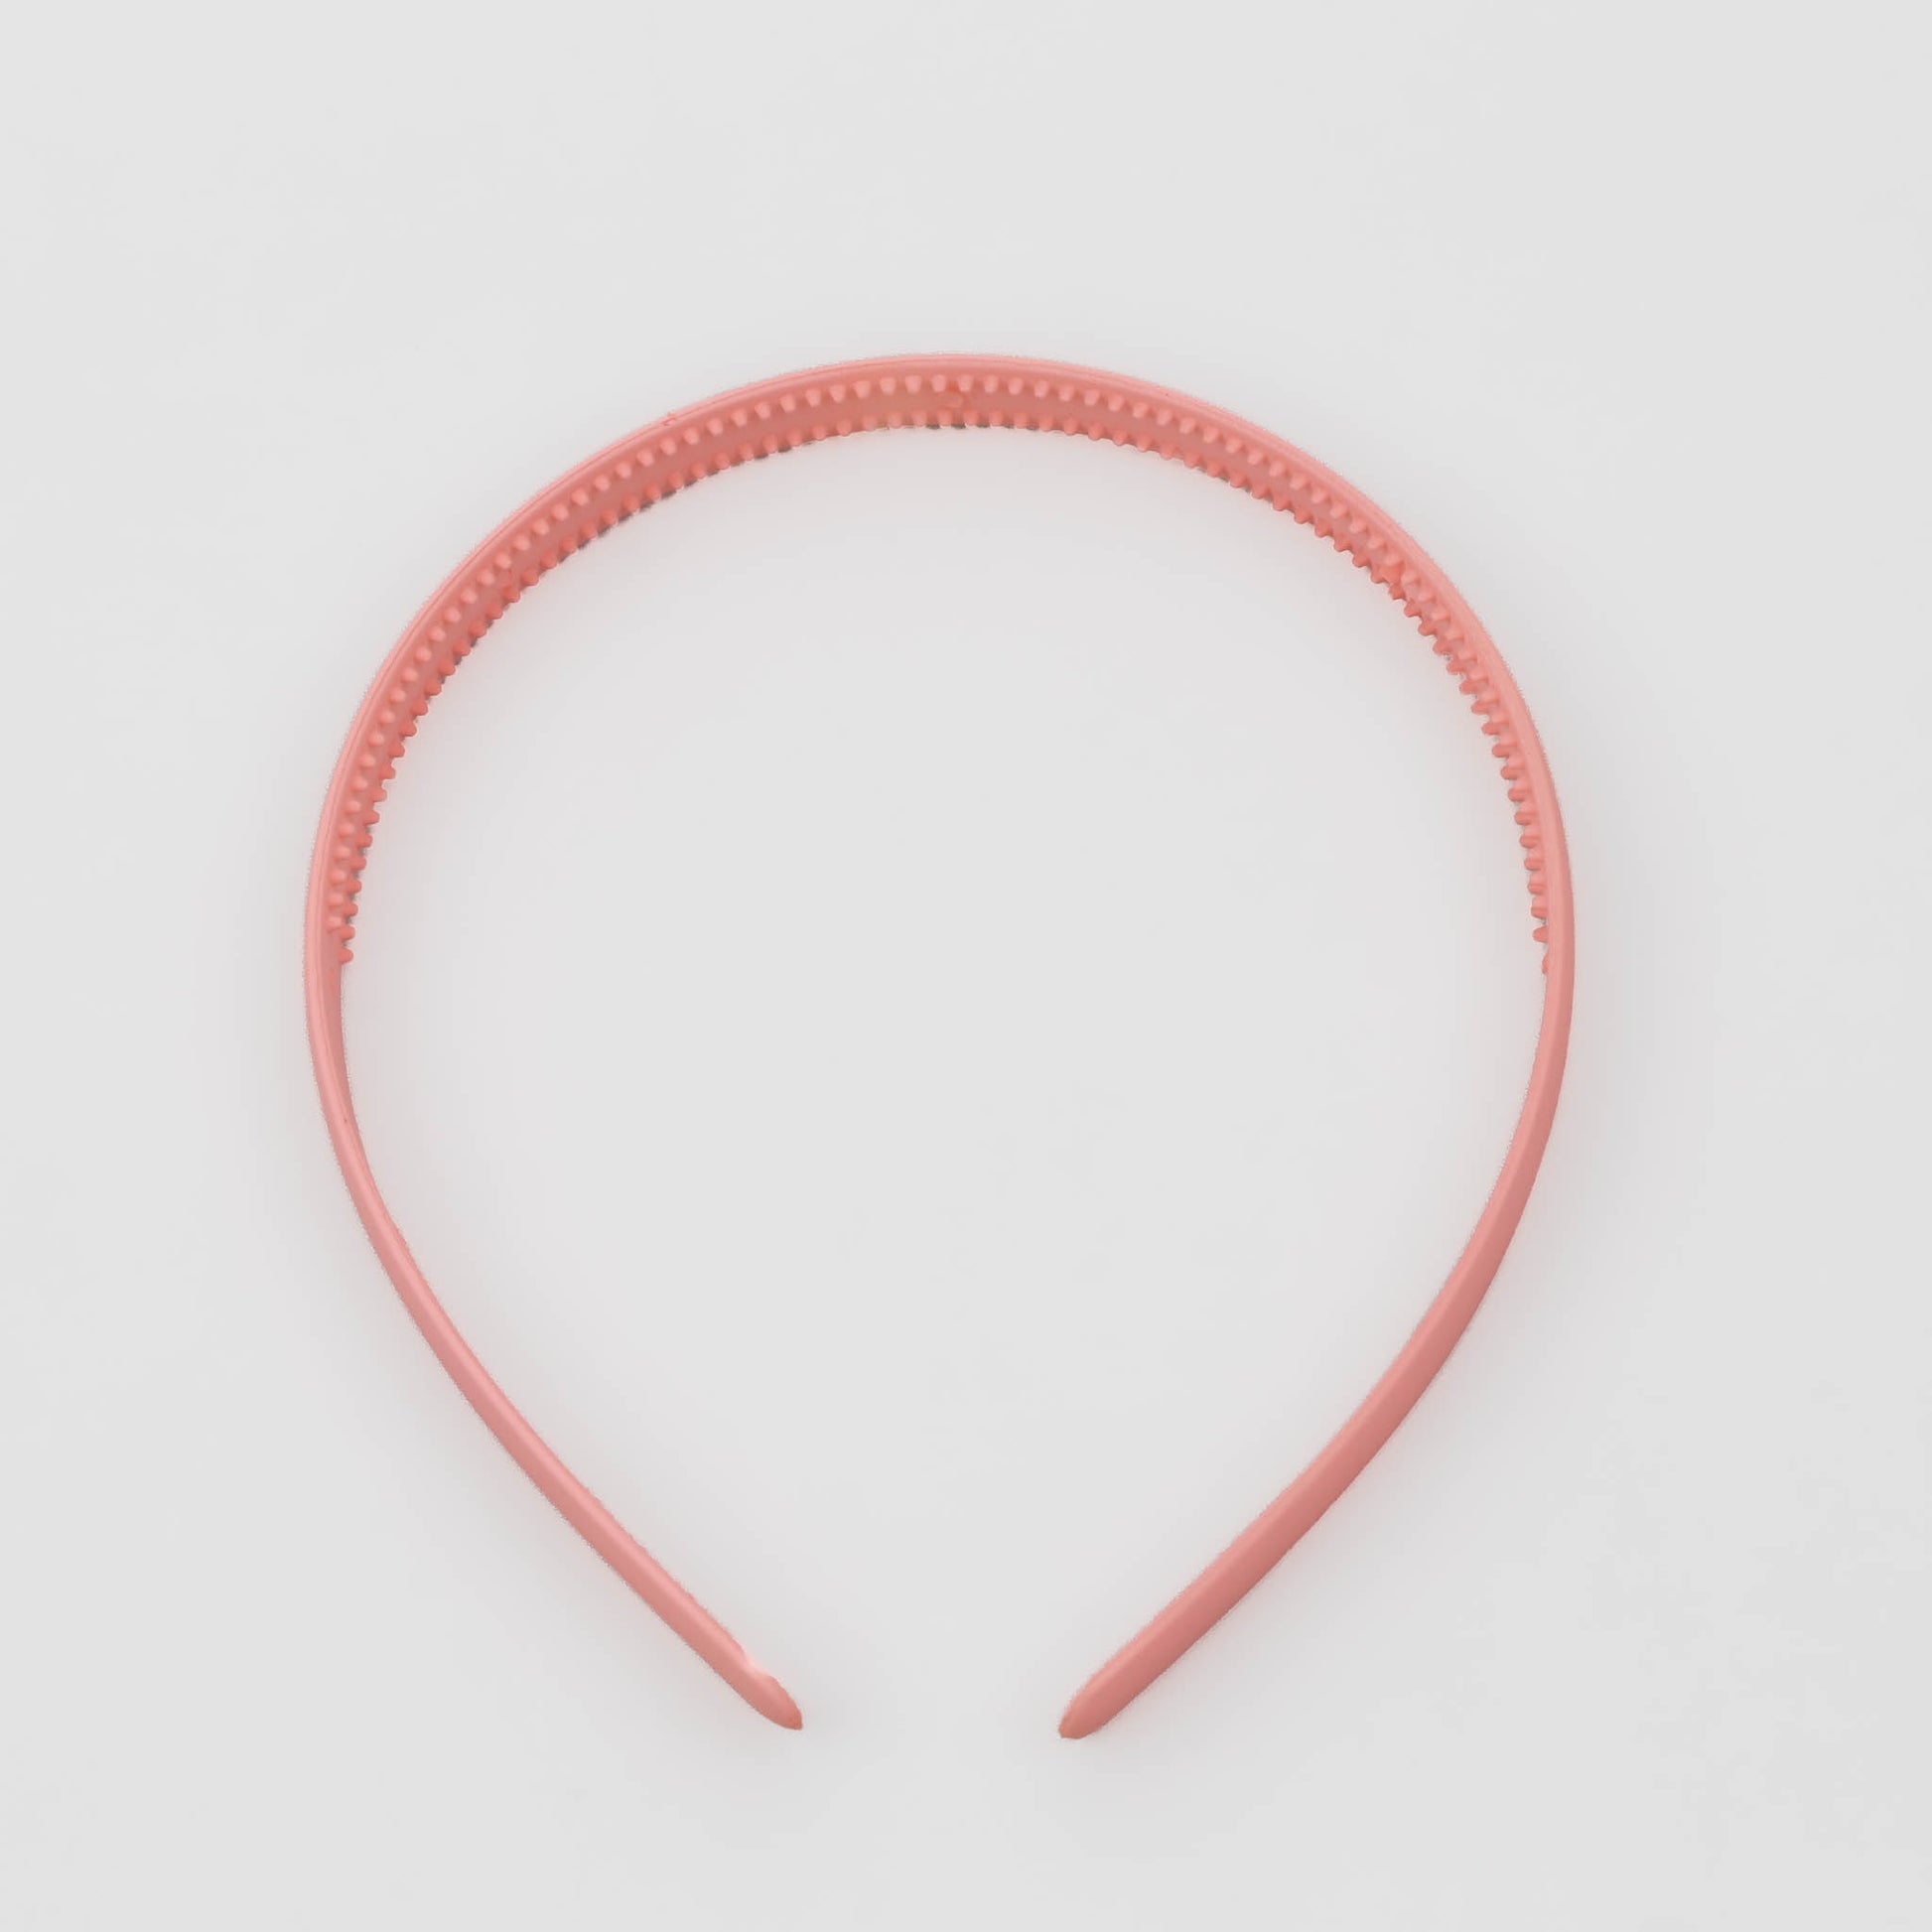 Cordeluțe de păr subțiri simple cu textură de silicon, set 2 buc - Roz, Roșu